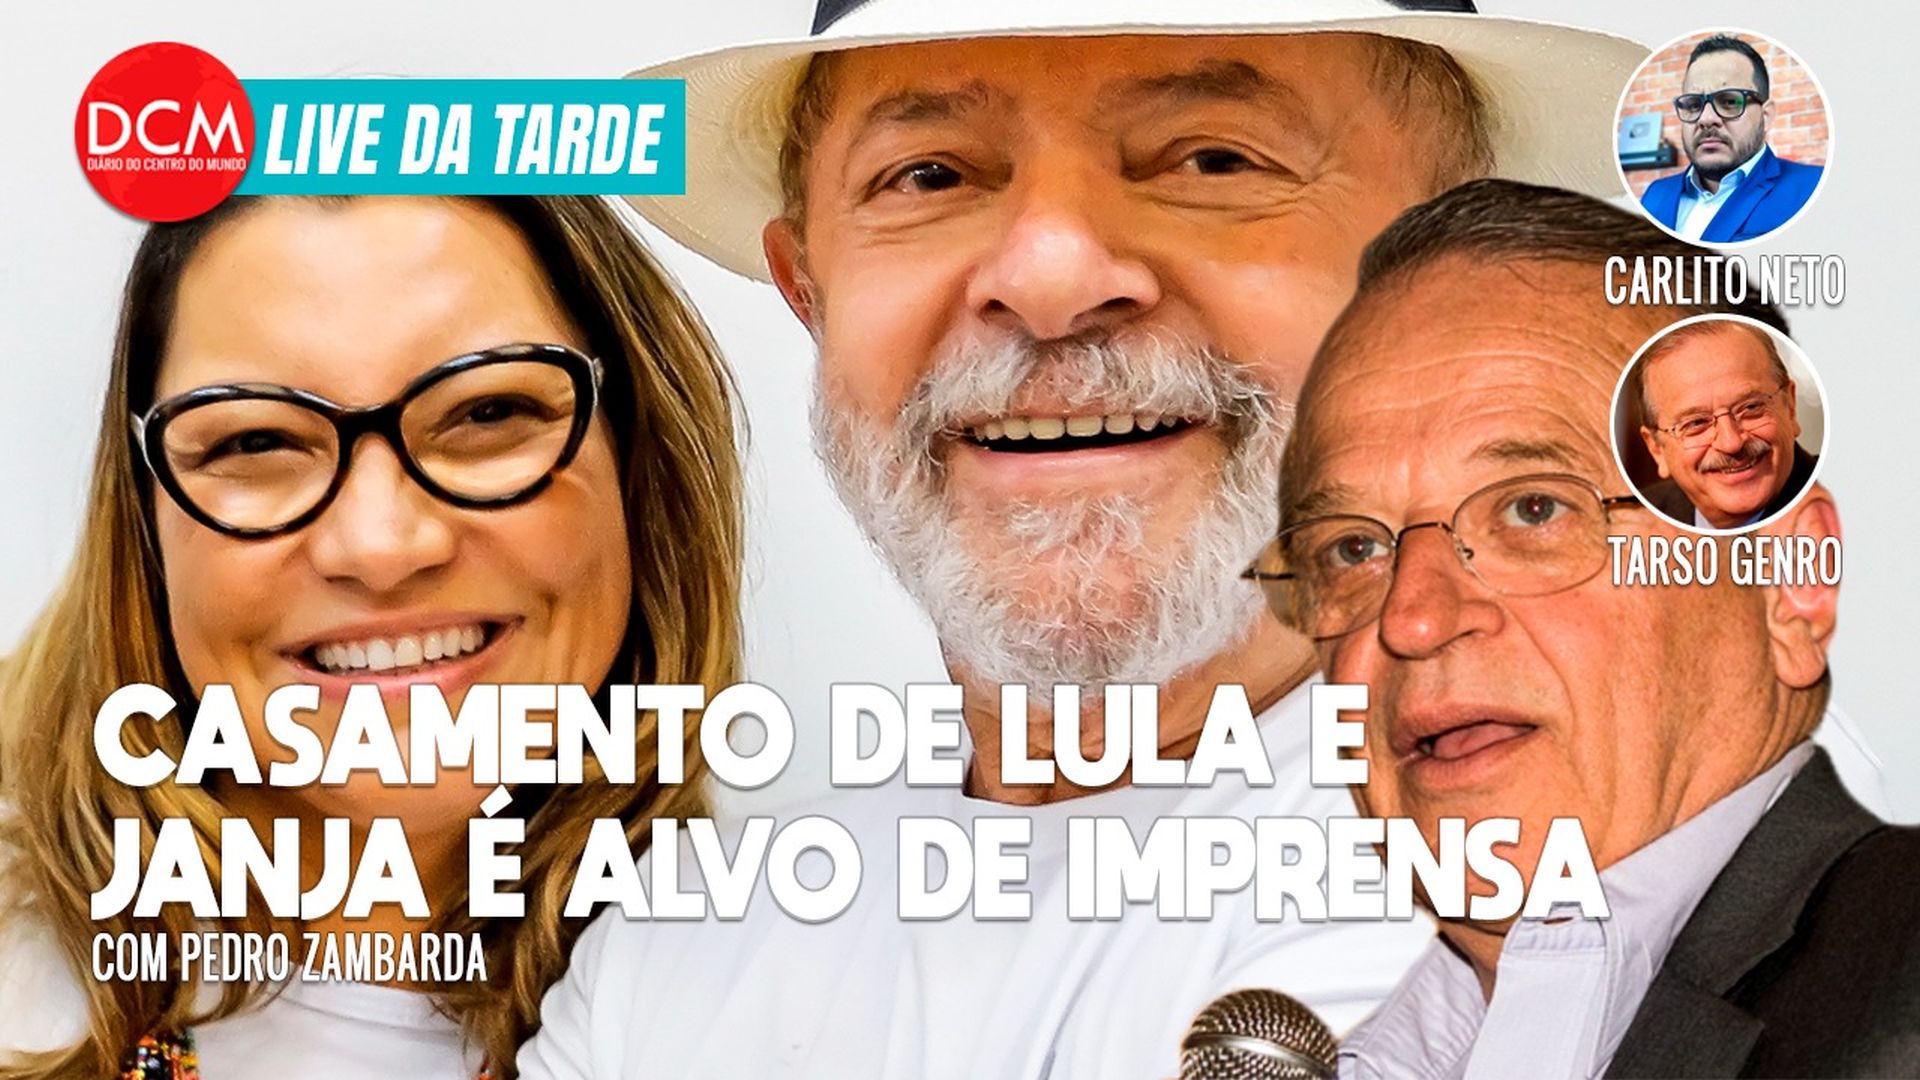 Live da Tarde: Toffoli rejeita palhaçada de Bolsonaro contra Moraes; Tarso Genro fala das ameaças à democracia